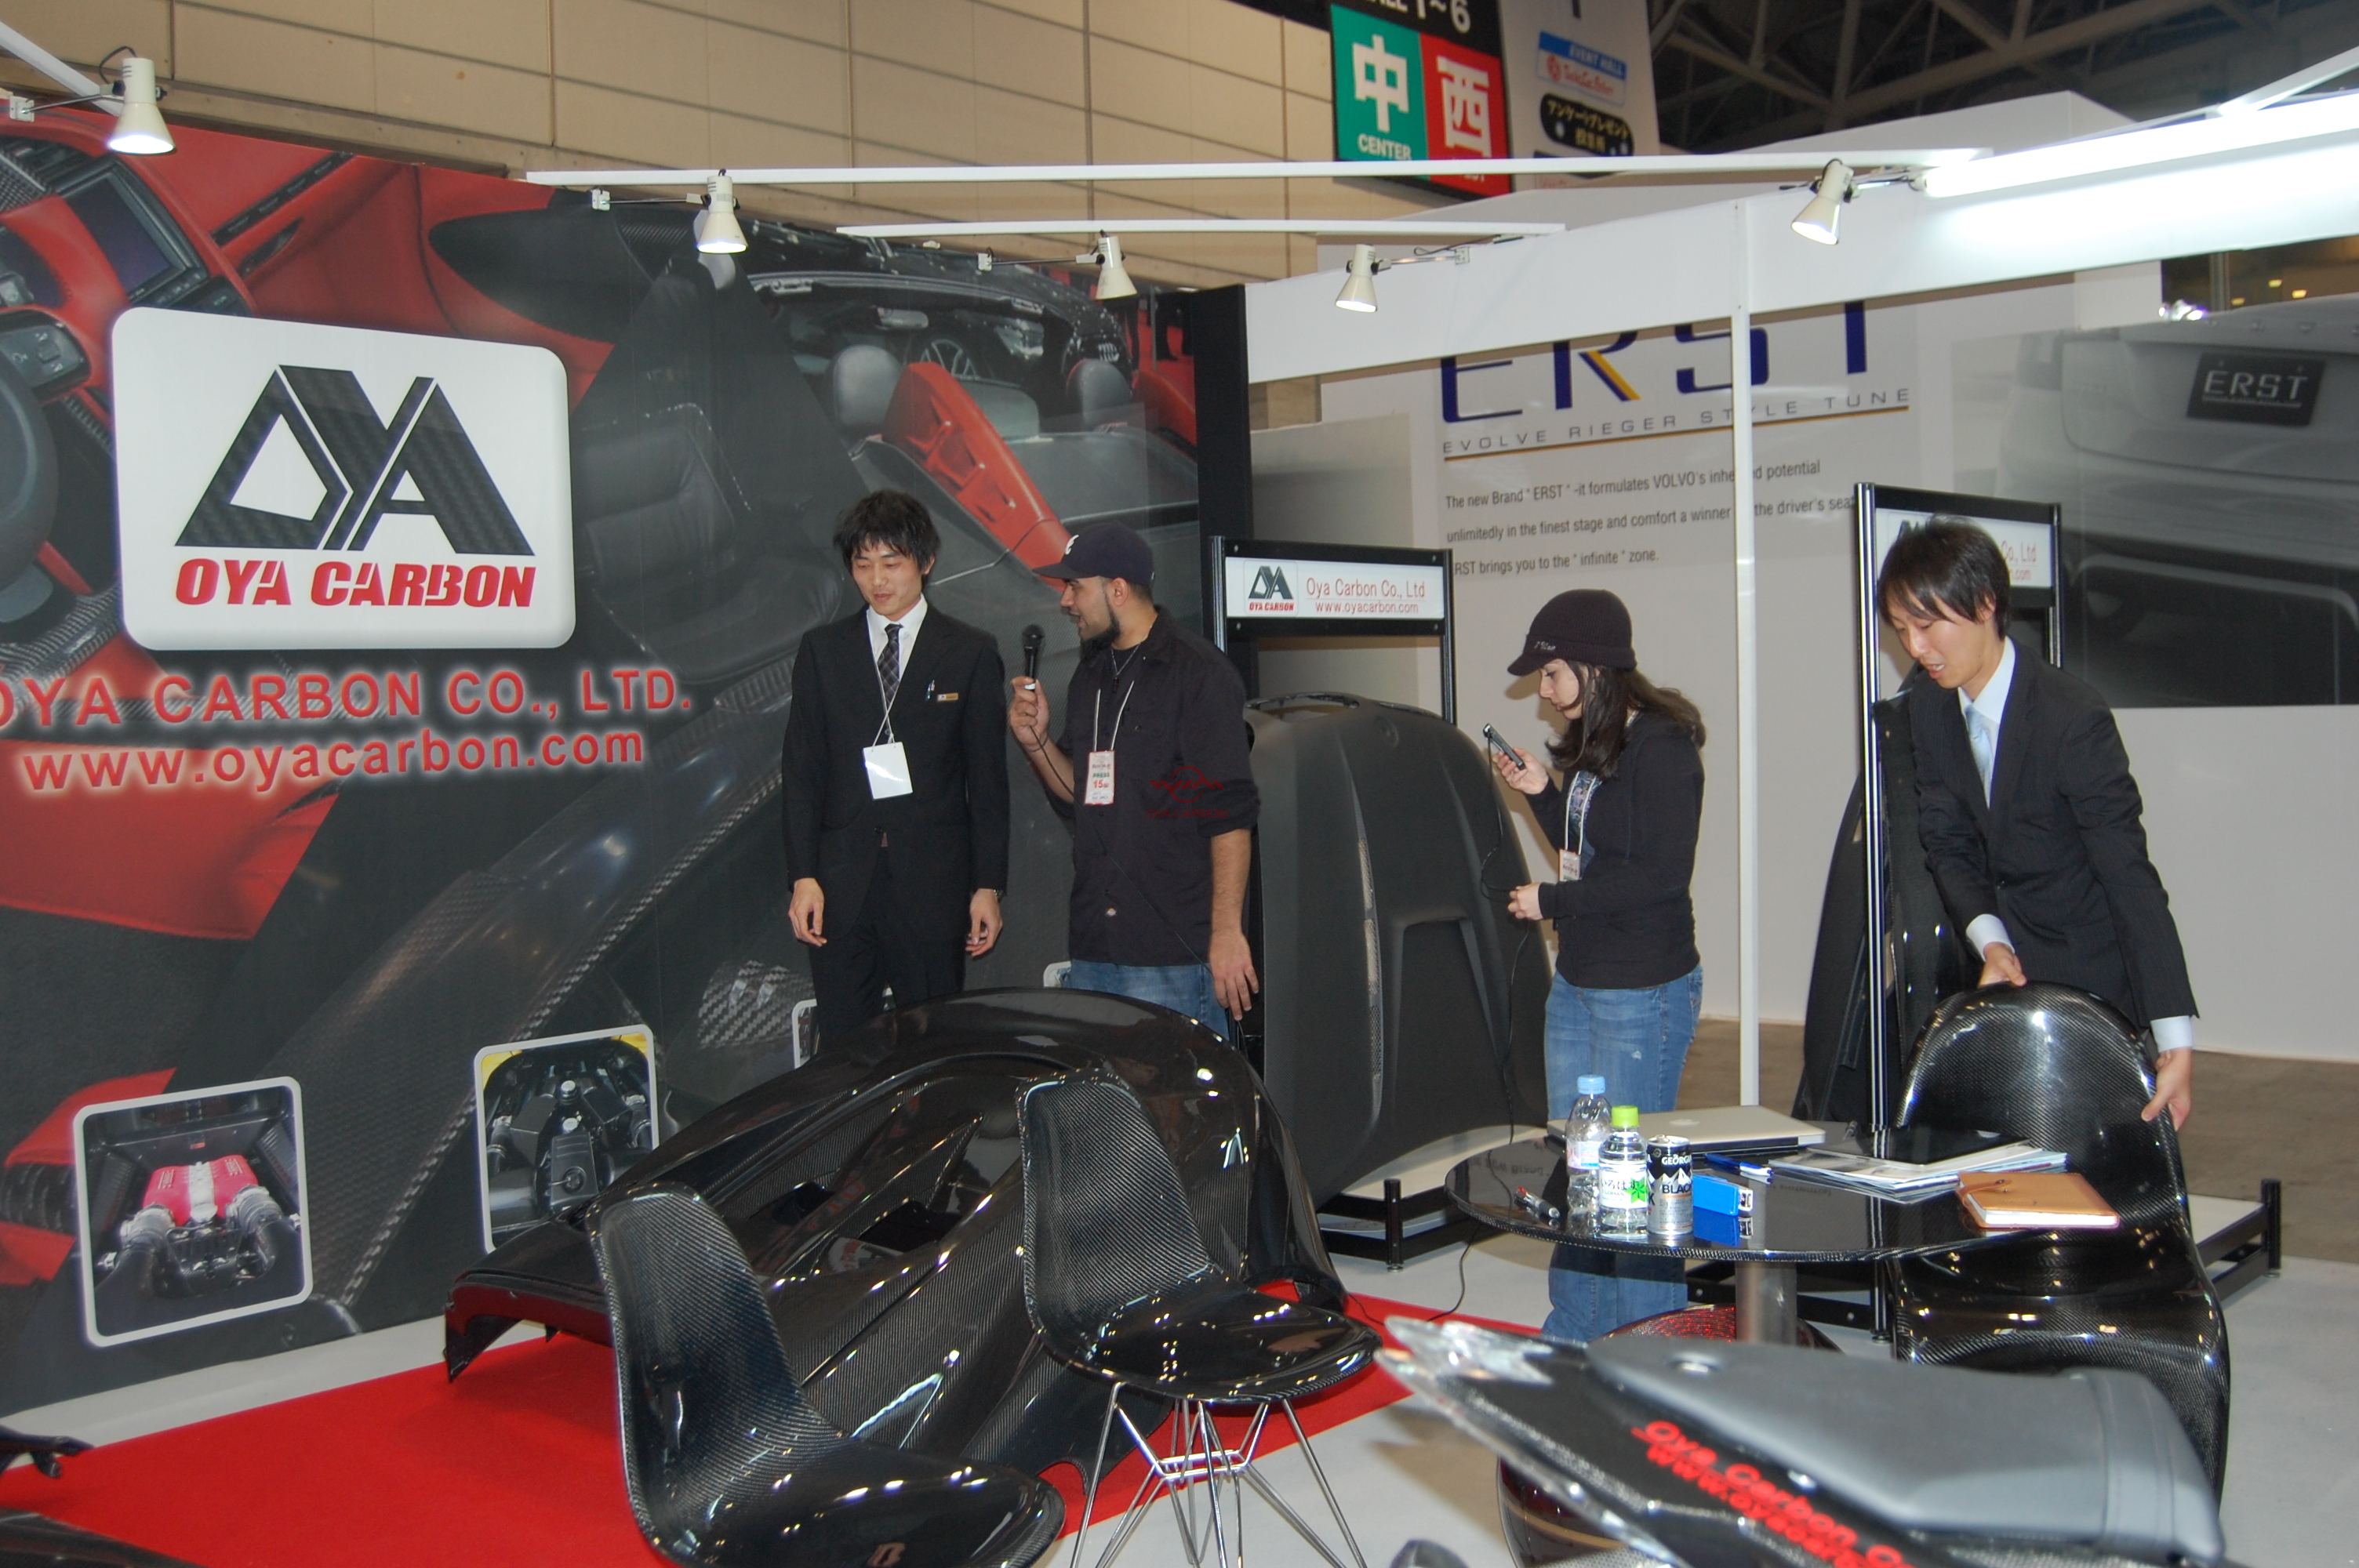 日本京改装车展東京オートサロン2012.1.13-1.15 16